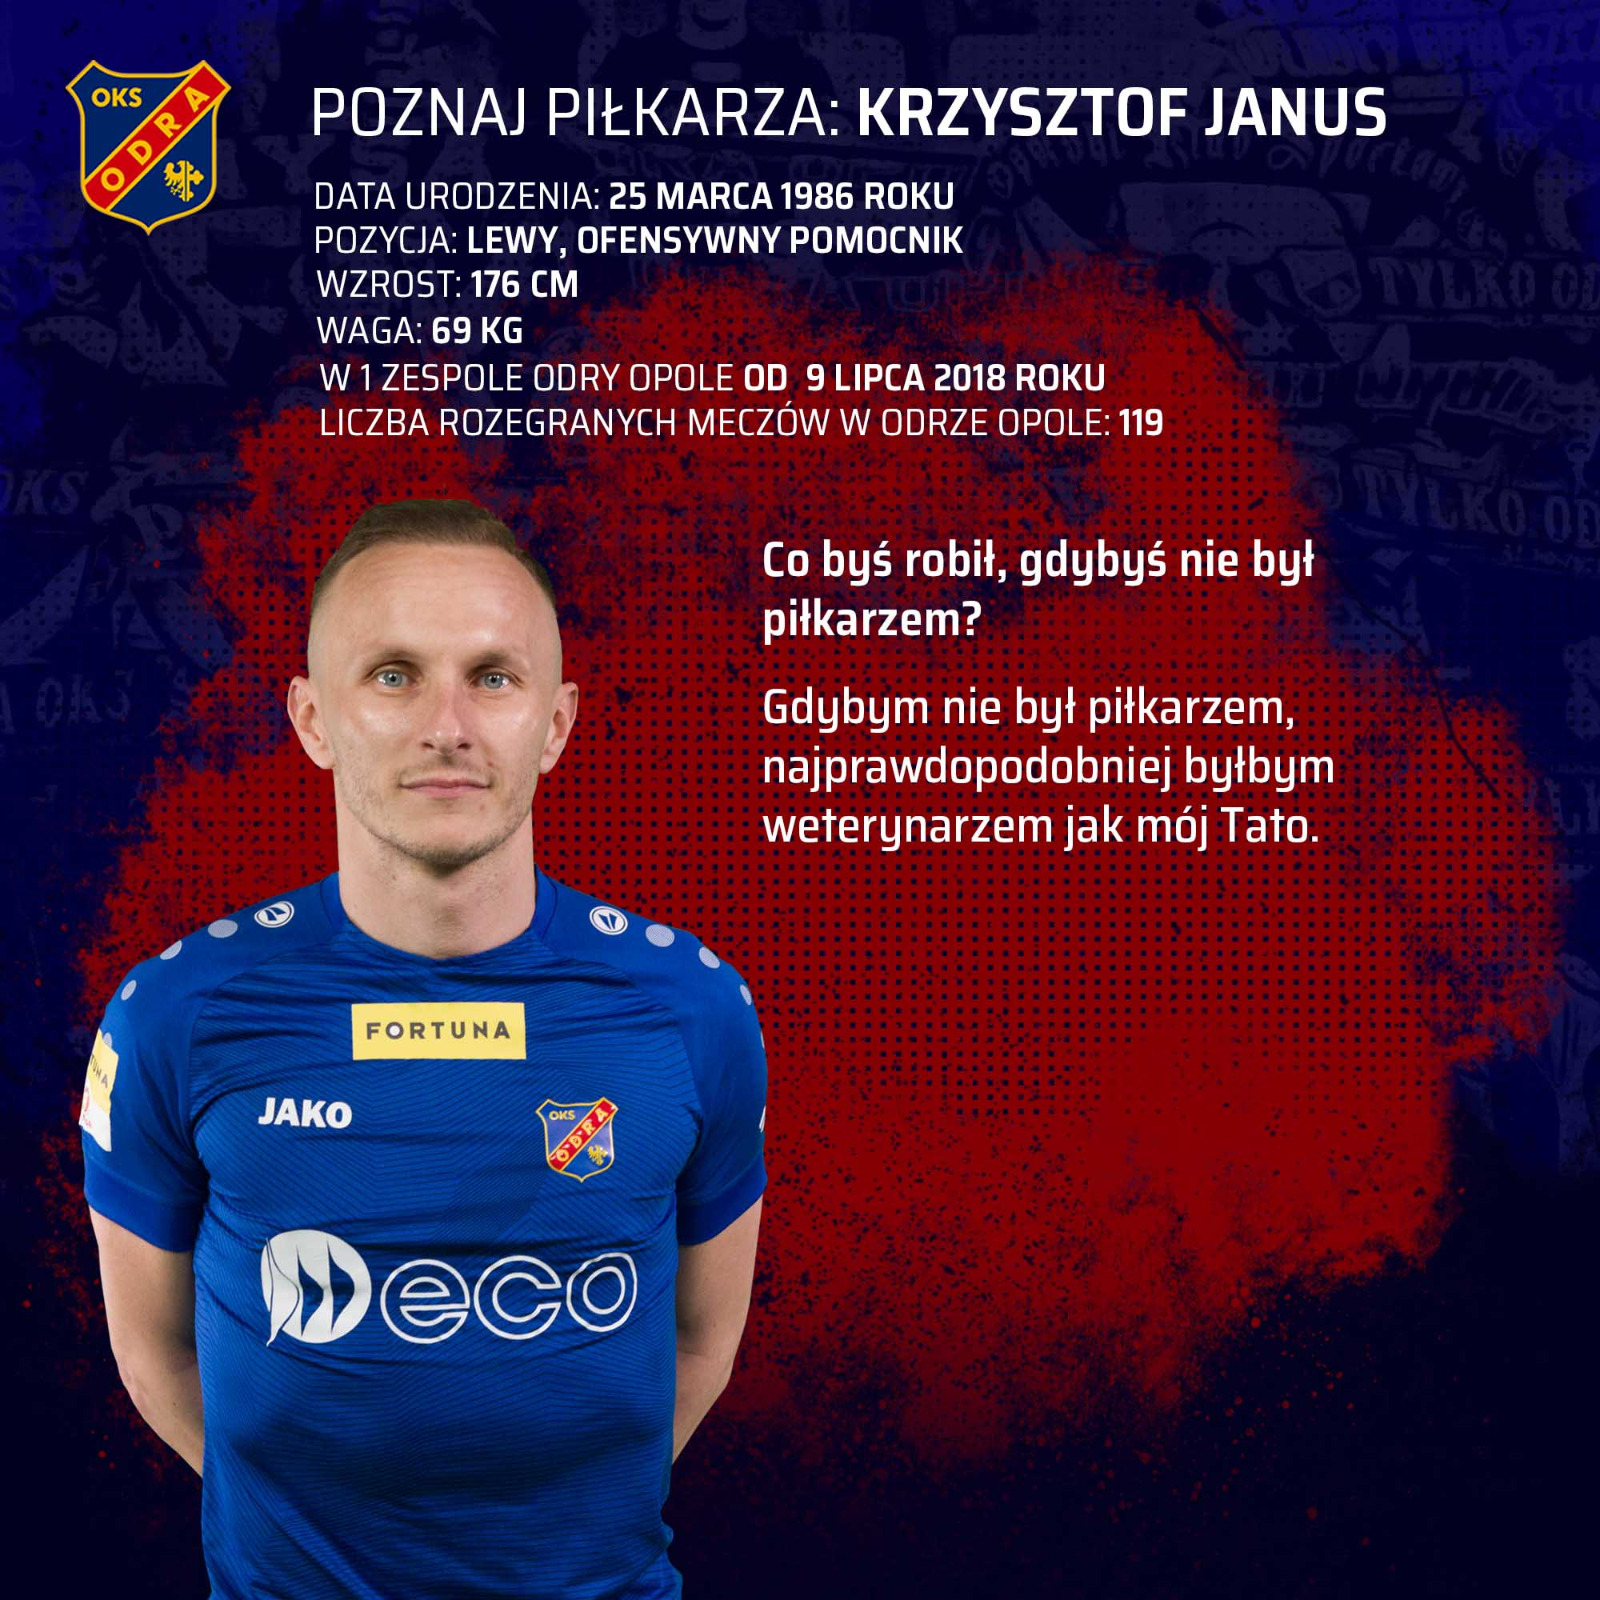 Poznaj piłkarza: Krzysztof Janus